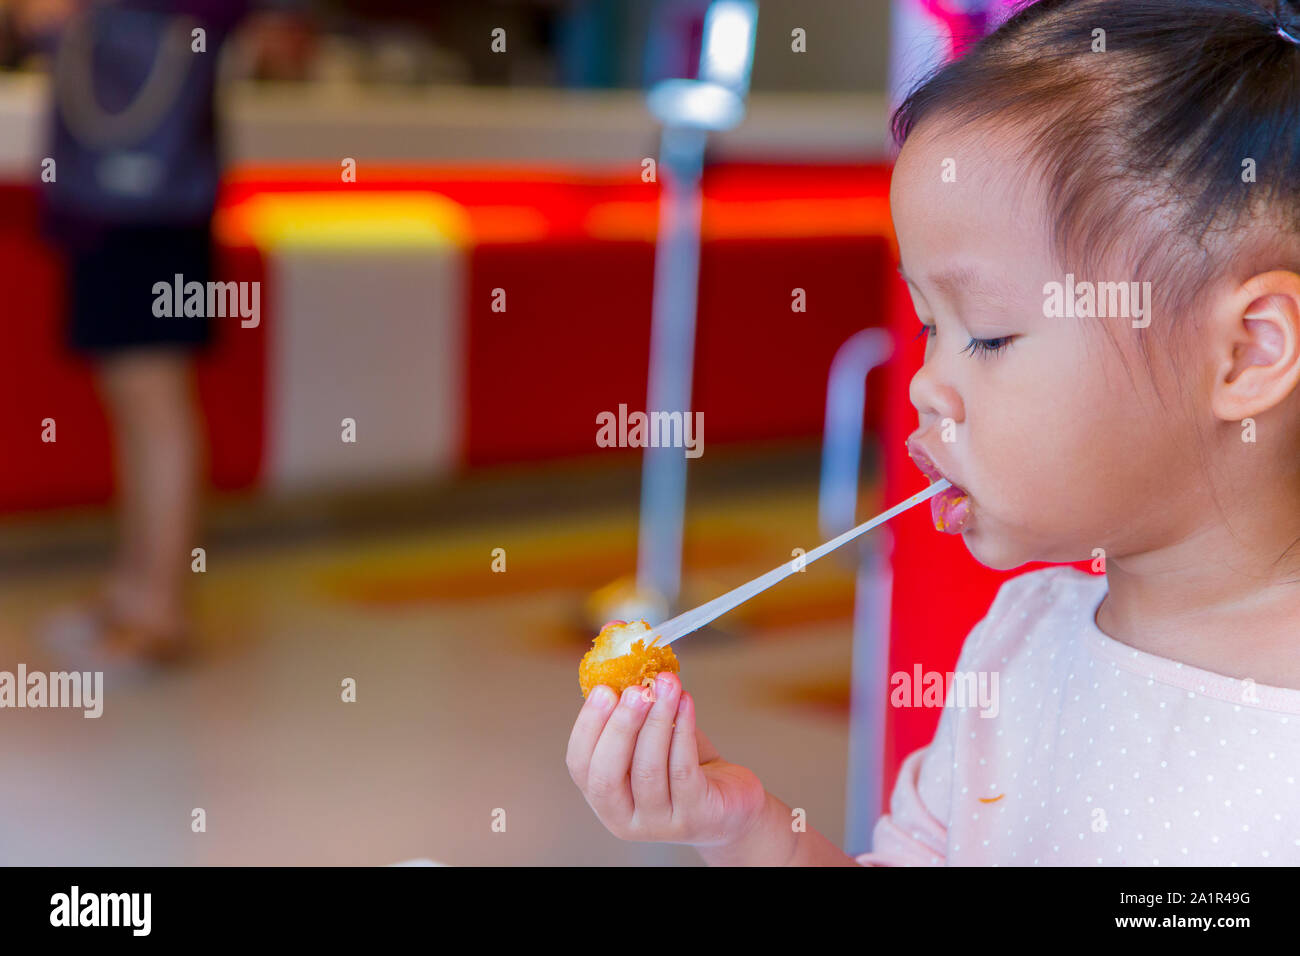 Kleines Kind asiatische Essen klebrige Strecke gebratener Käse Ball. Gefühl genießen. Hochauflösende Bilder Galerie. Stockfoto